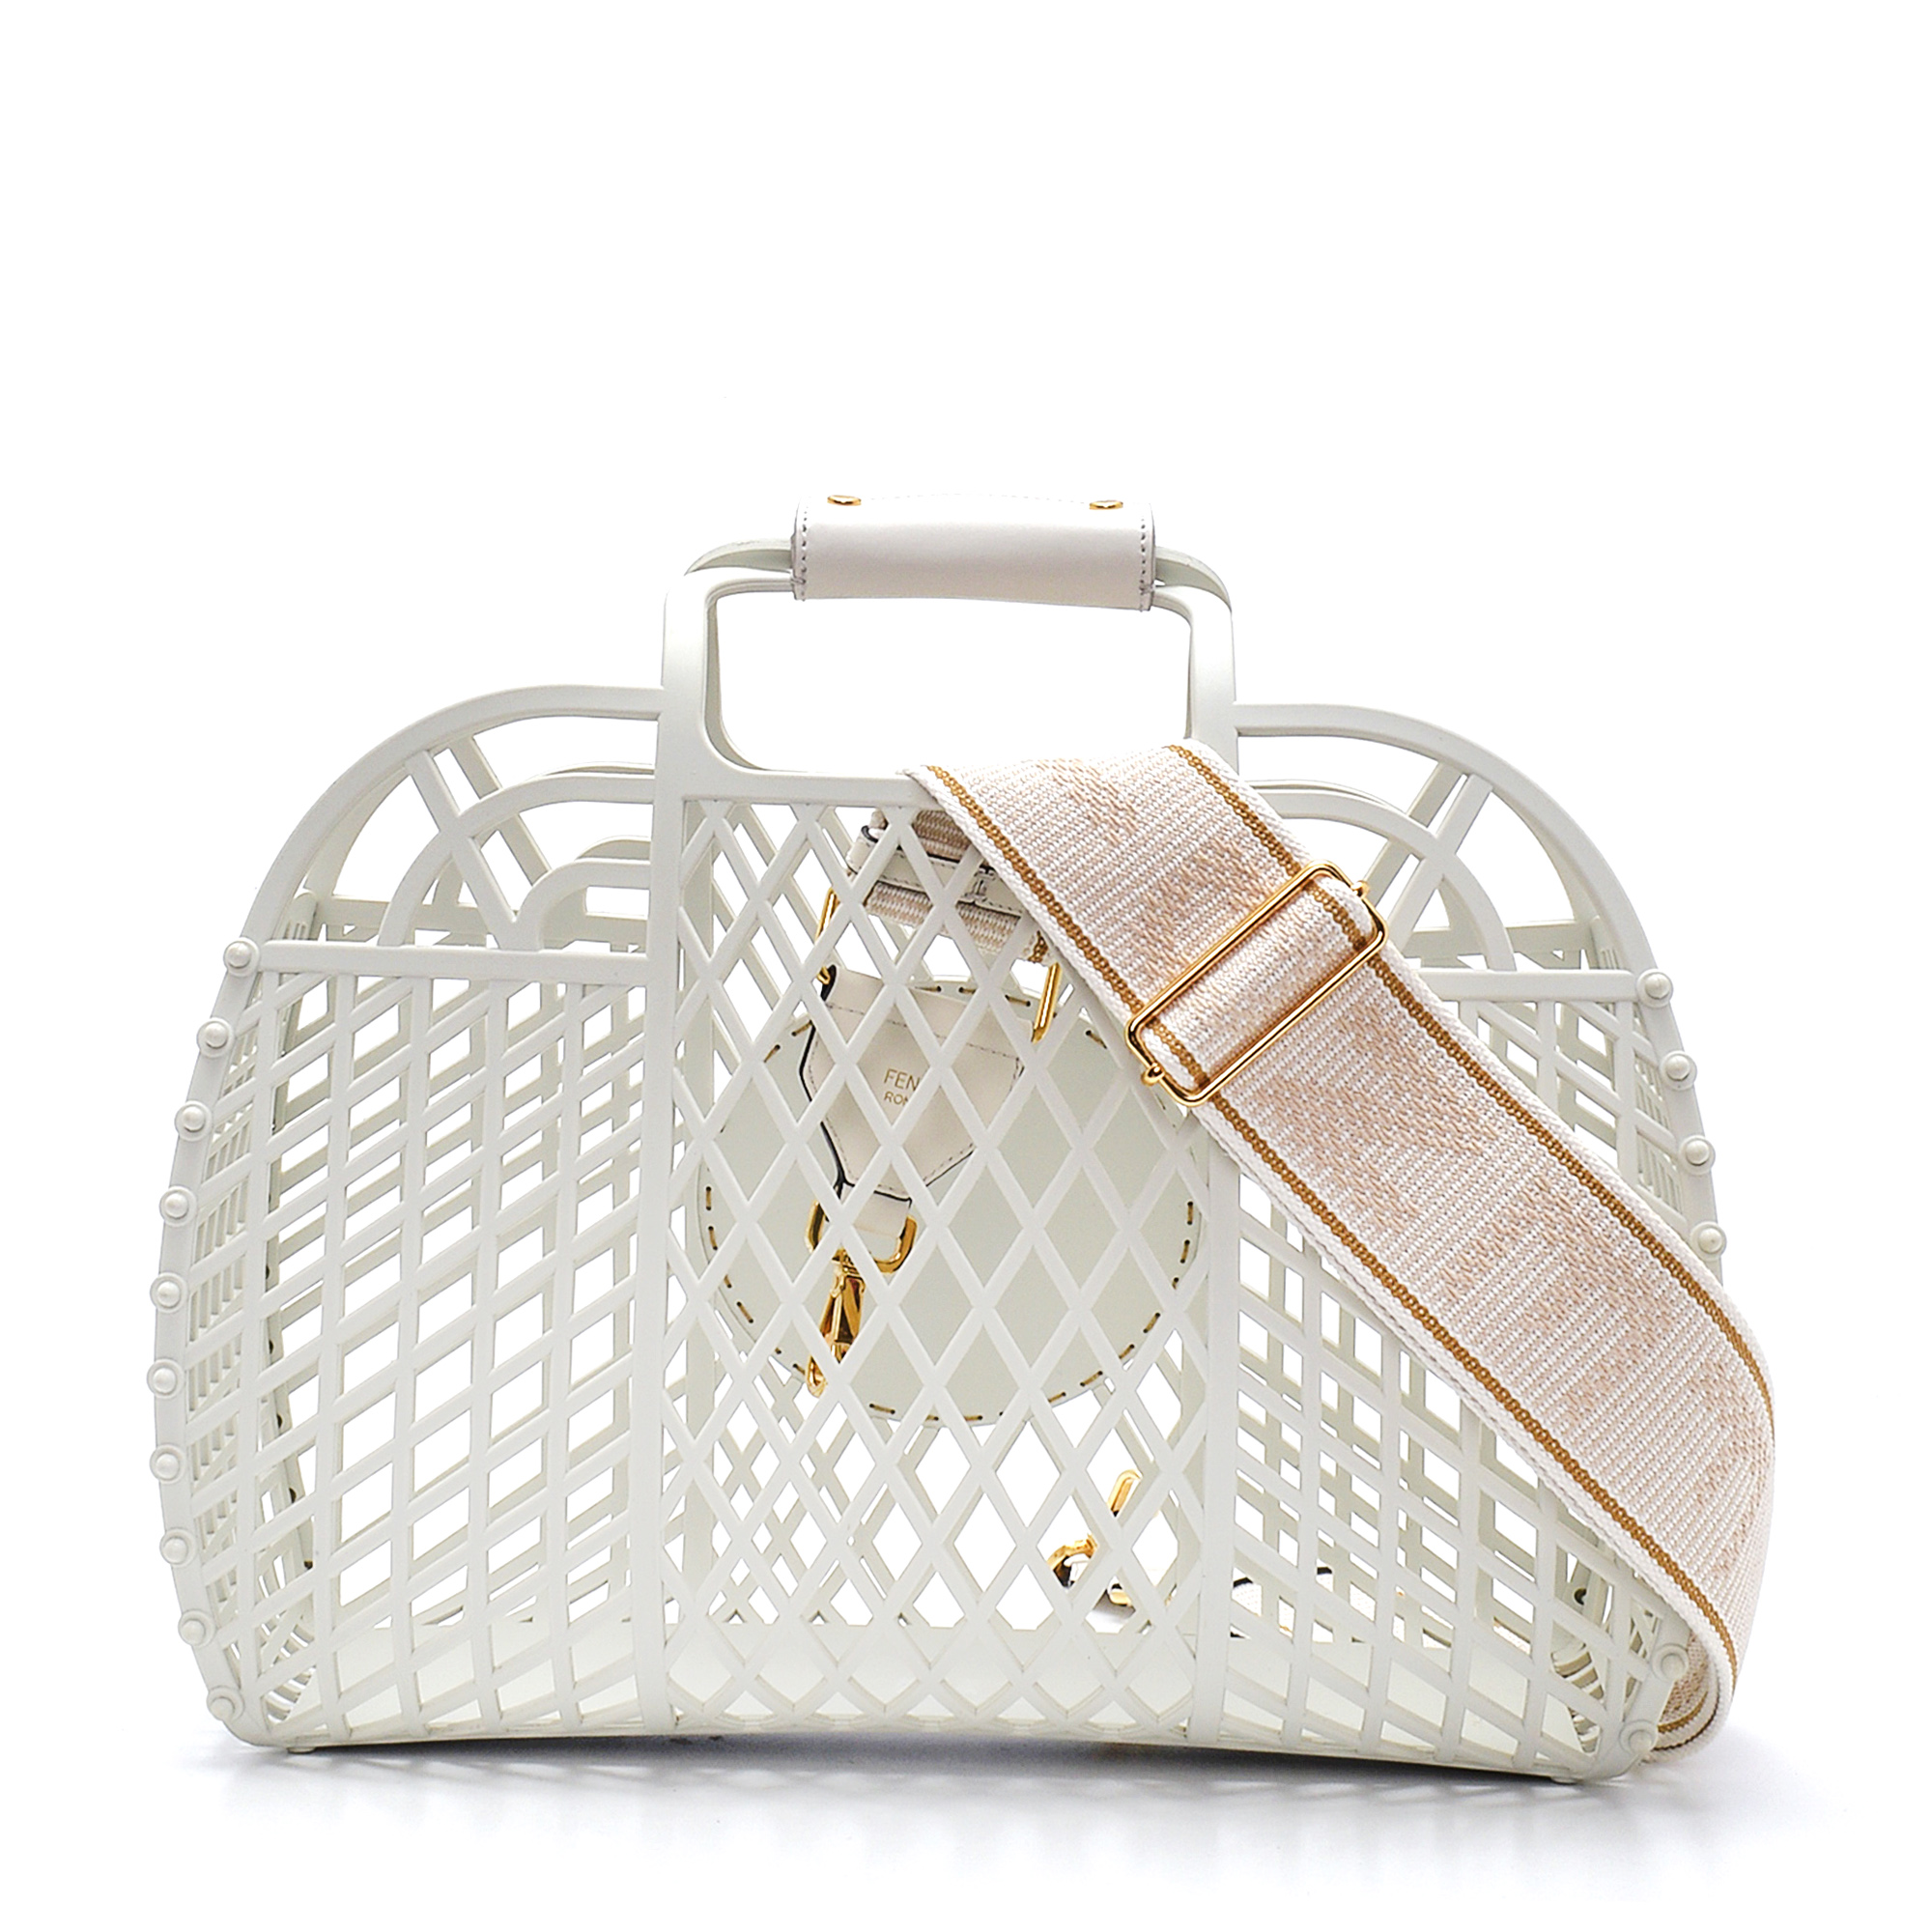 Fendi - White Recycled PVC Basket Handbag